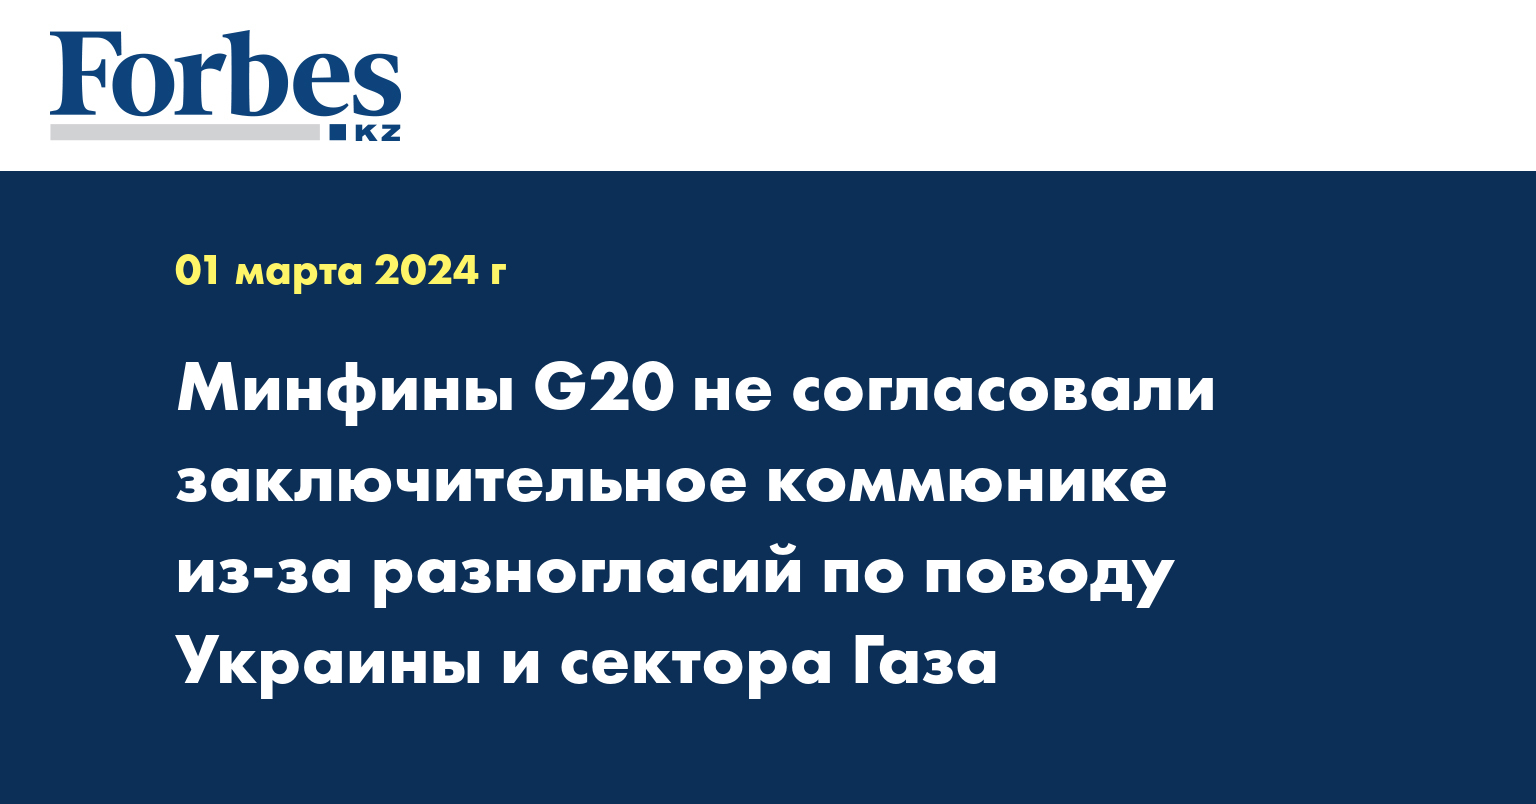 Минфины G20 не согласовали заключительное коммюнике из-за разногласий по поводу Украины и сектора Газа